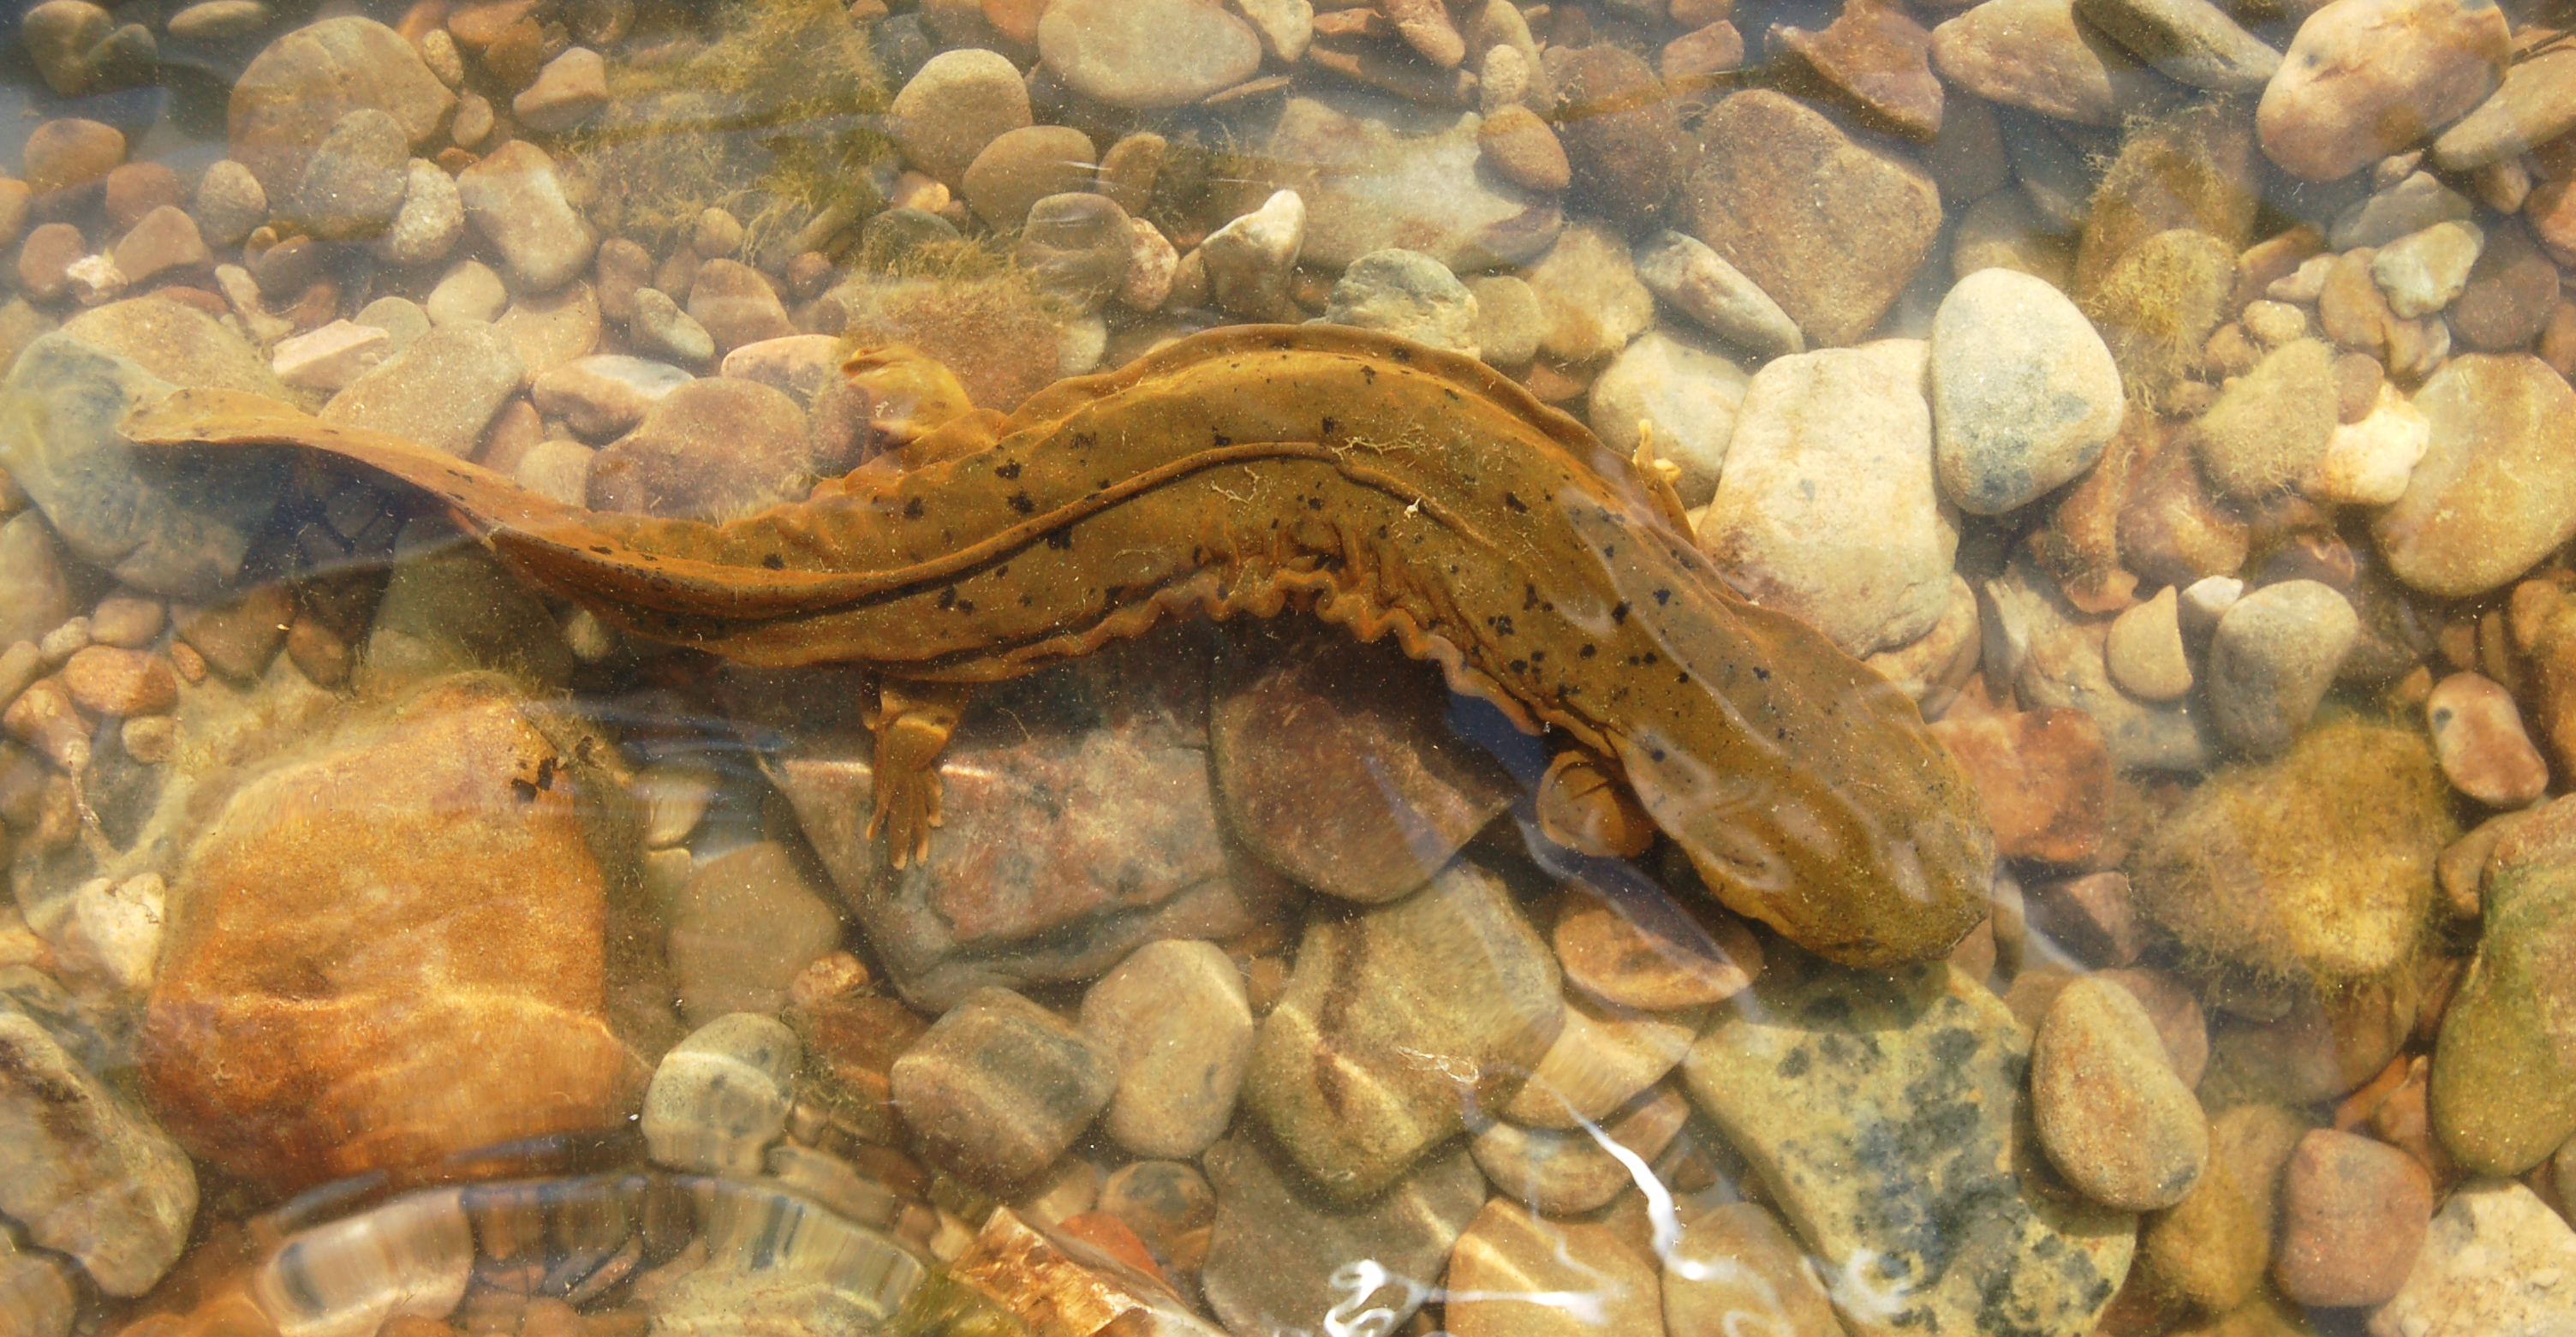 Eastern Hellbender Salamander